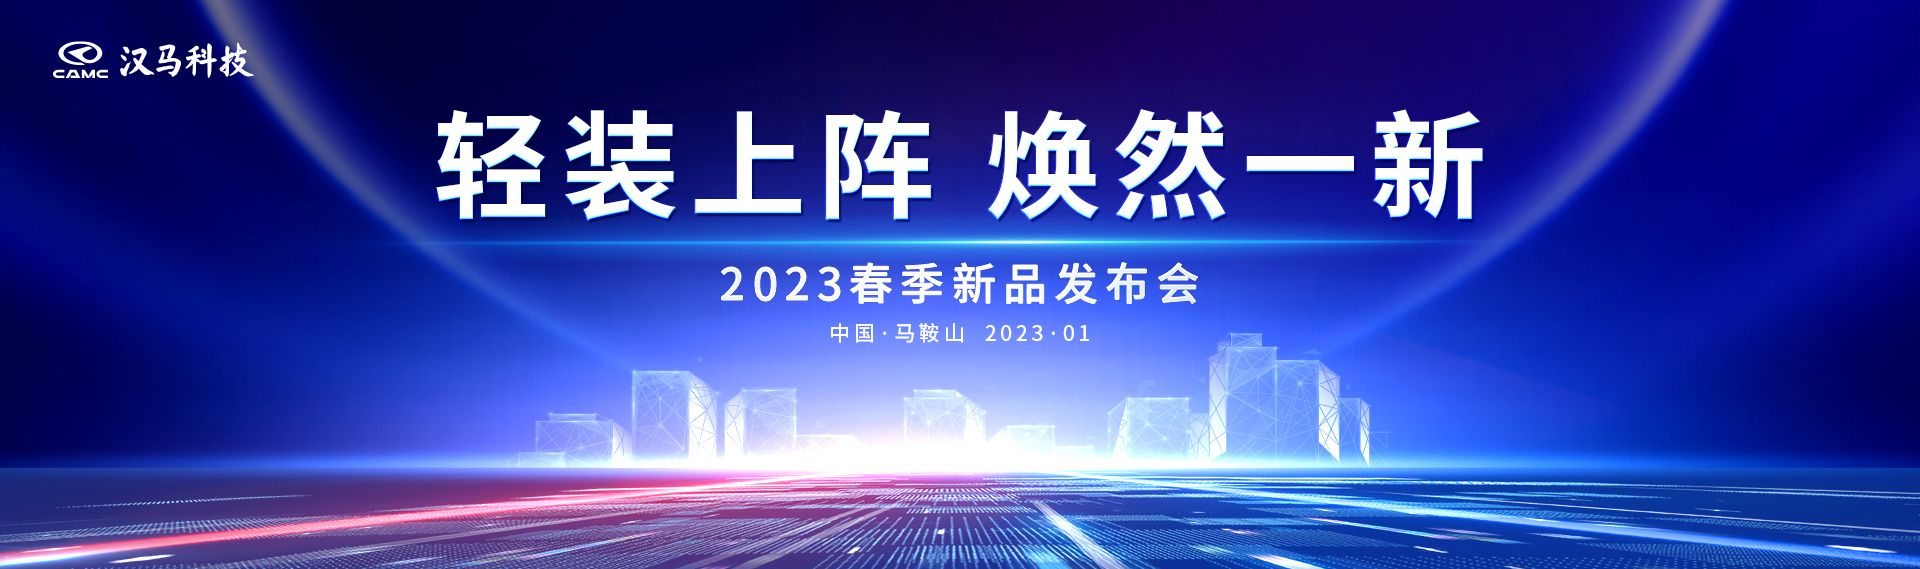 輕裝上陣 煥然一新 漢馬科技2023春季新品發布會